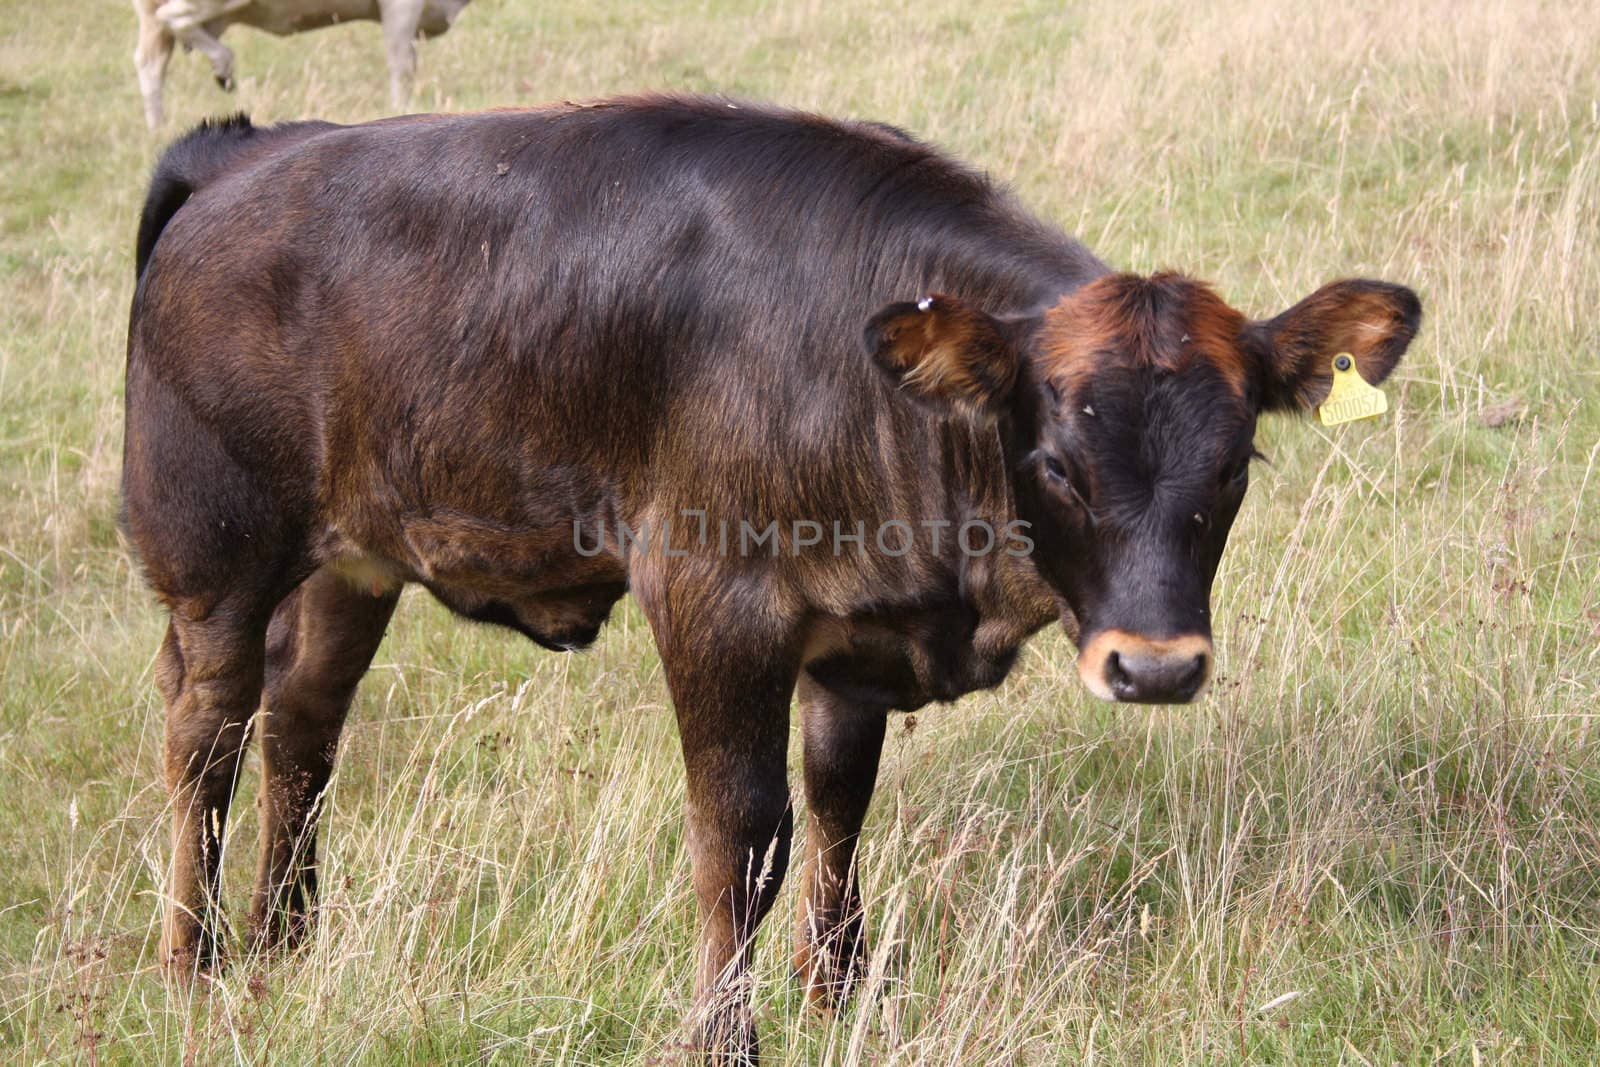 cow grazing in field by lizapixels